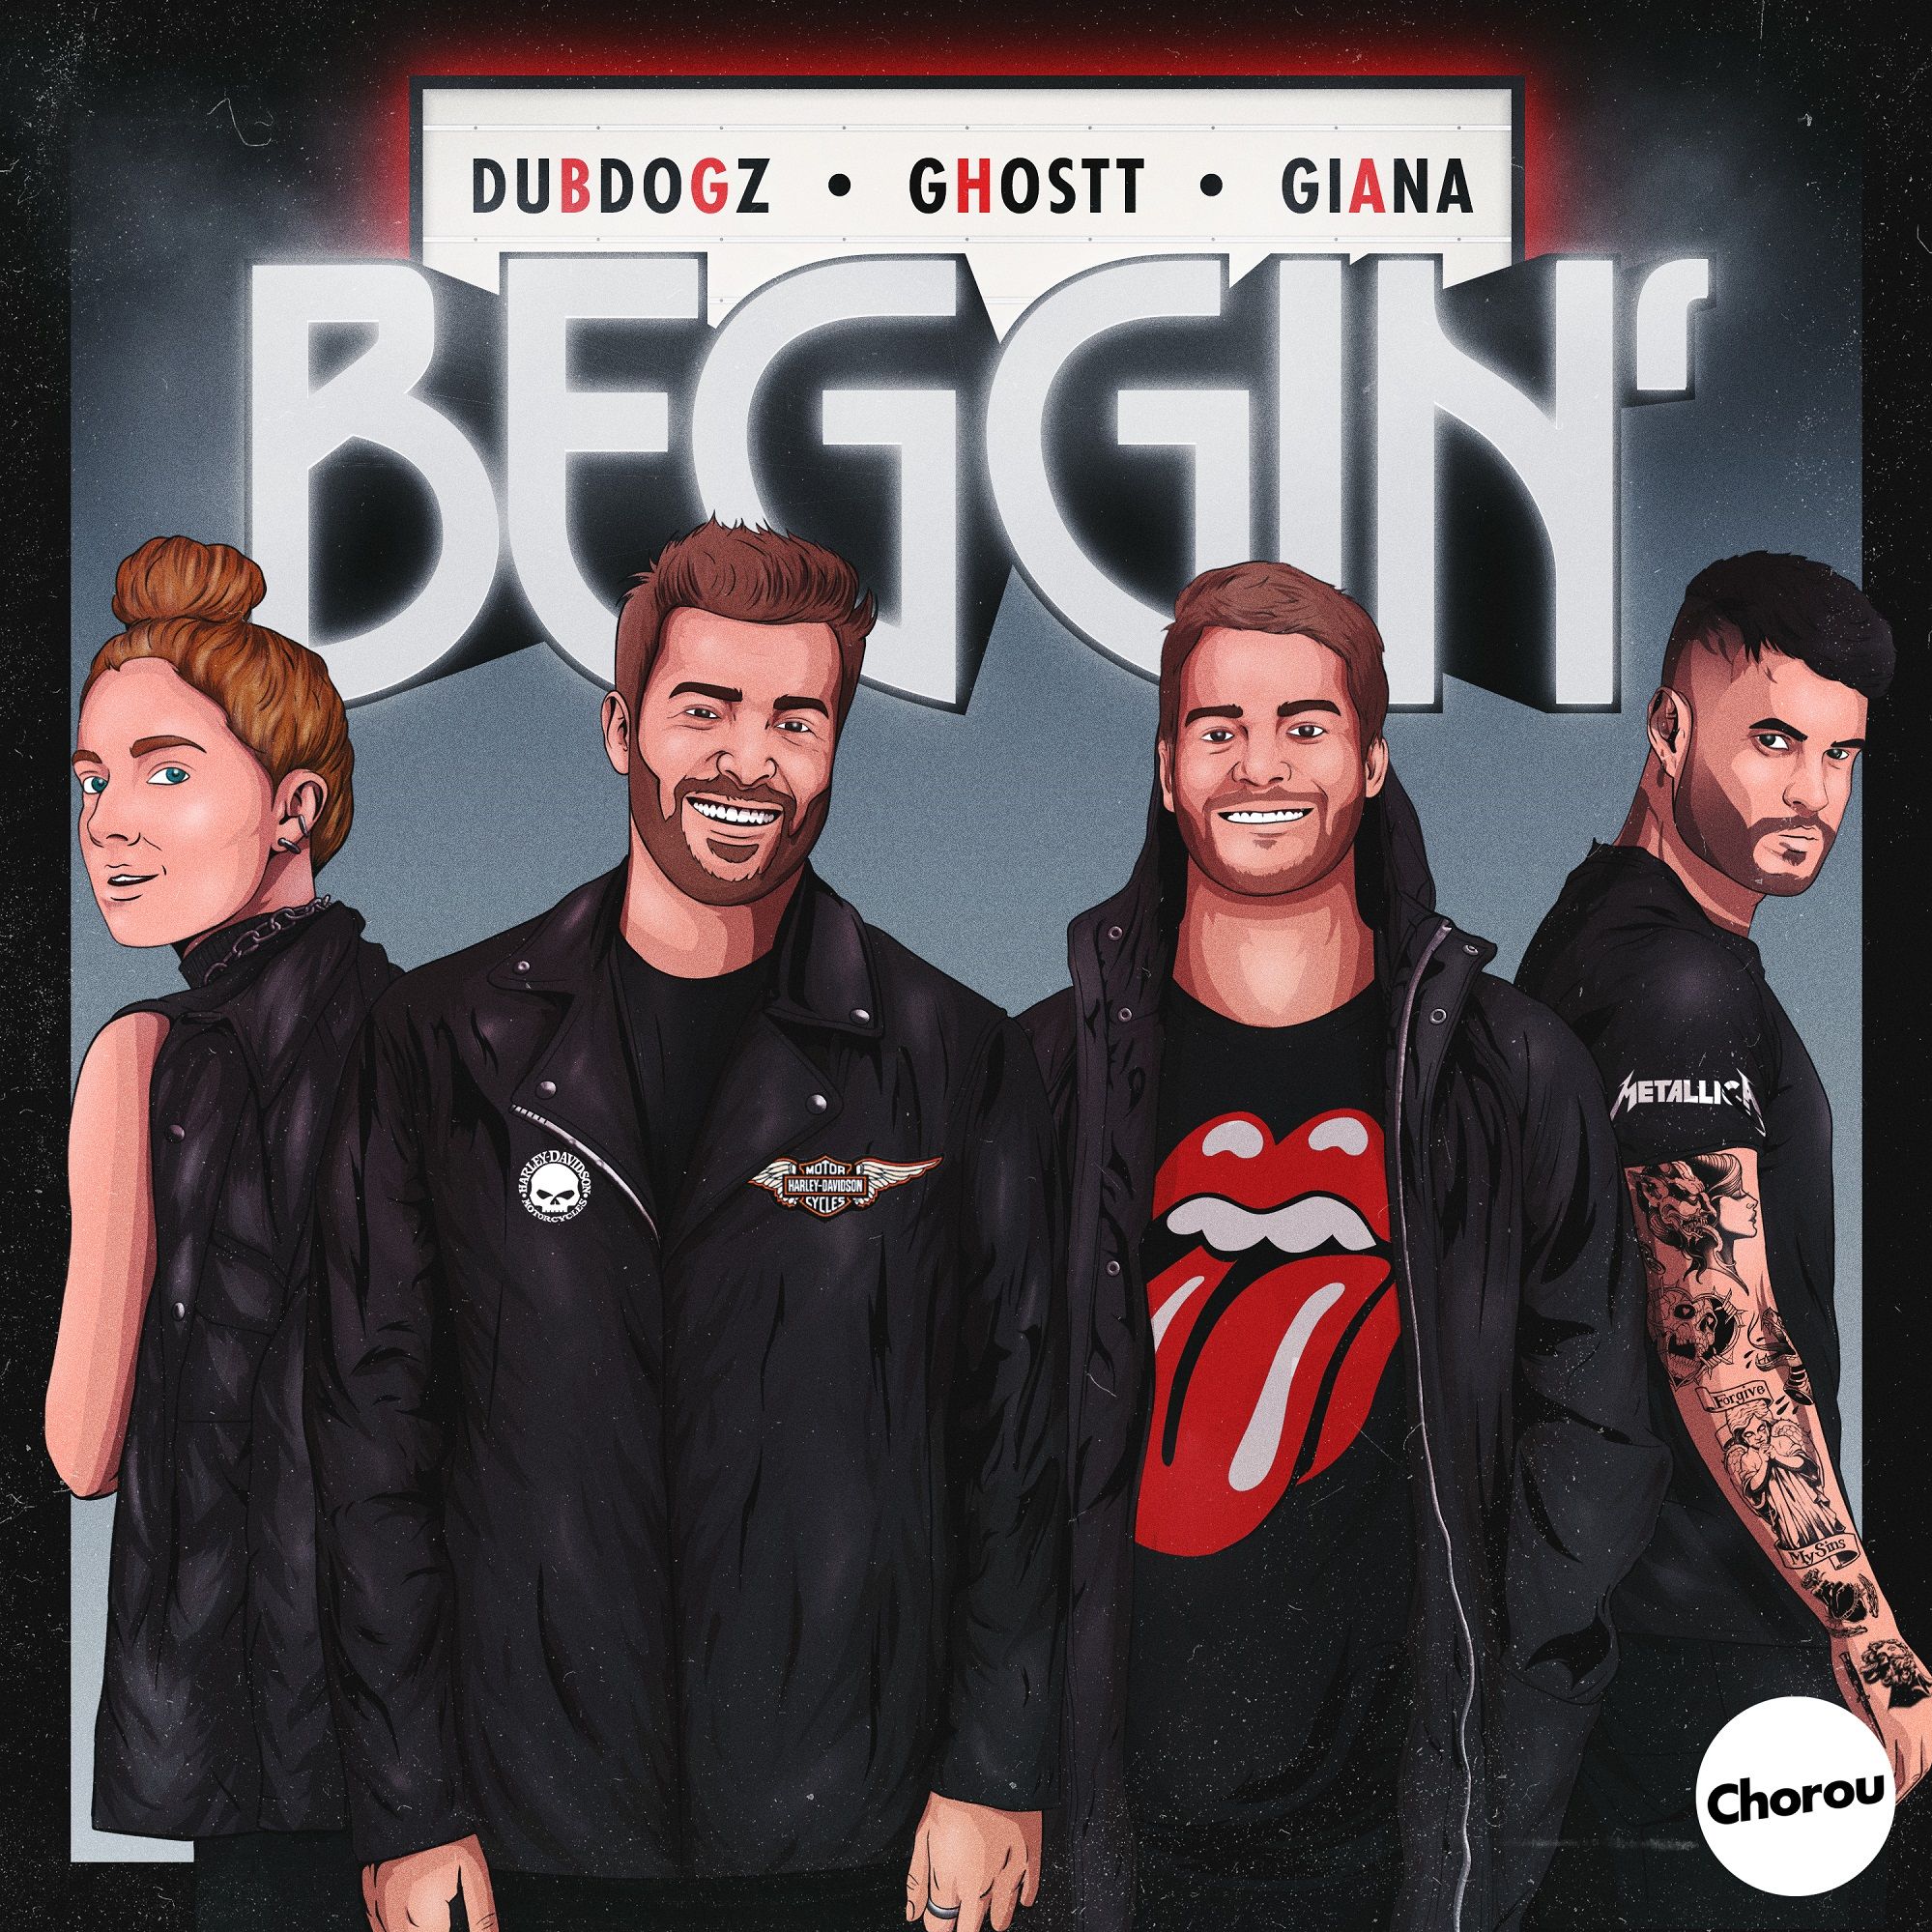 Khoasolla Dubdogz, Ghostt - Beggin' (feat. Giana) [Chorou Records]